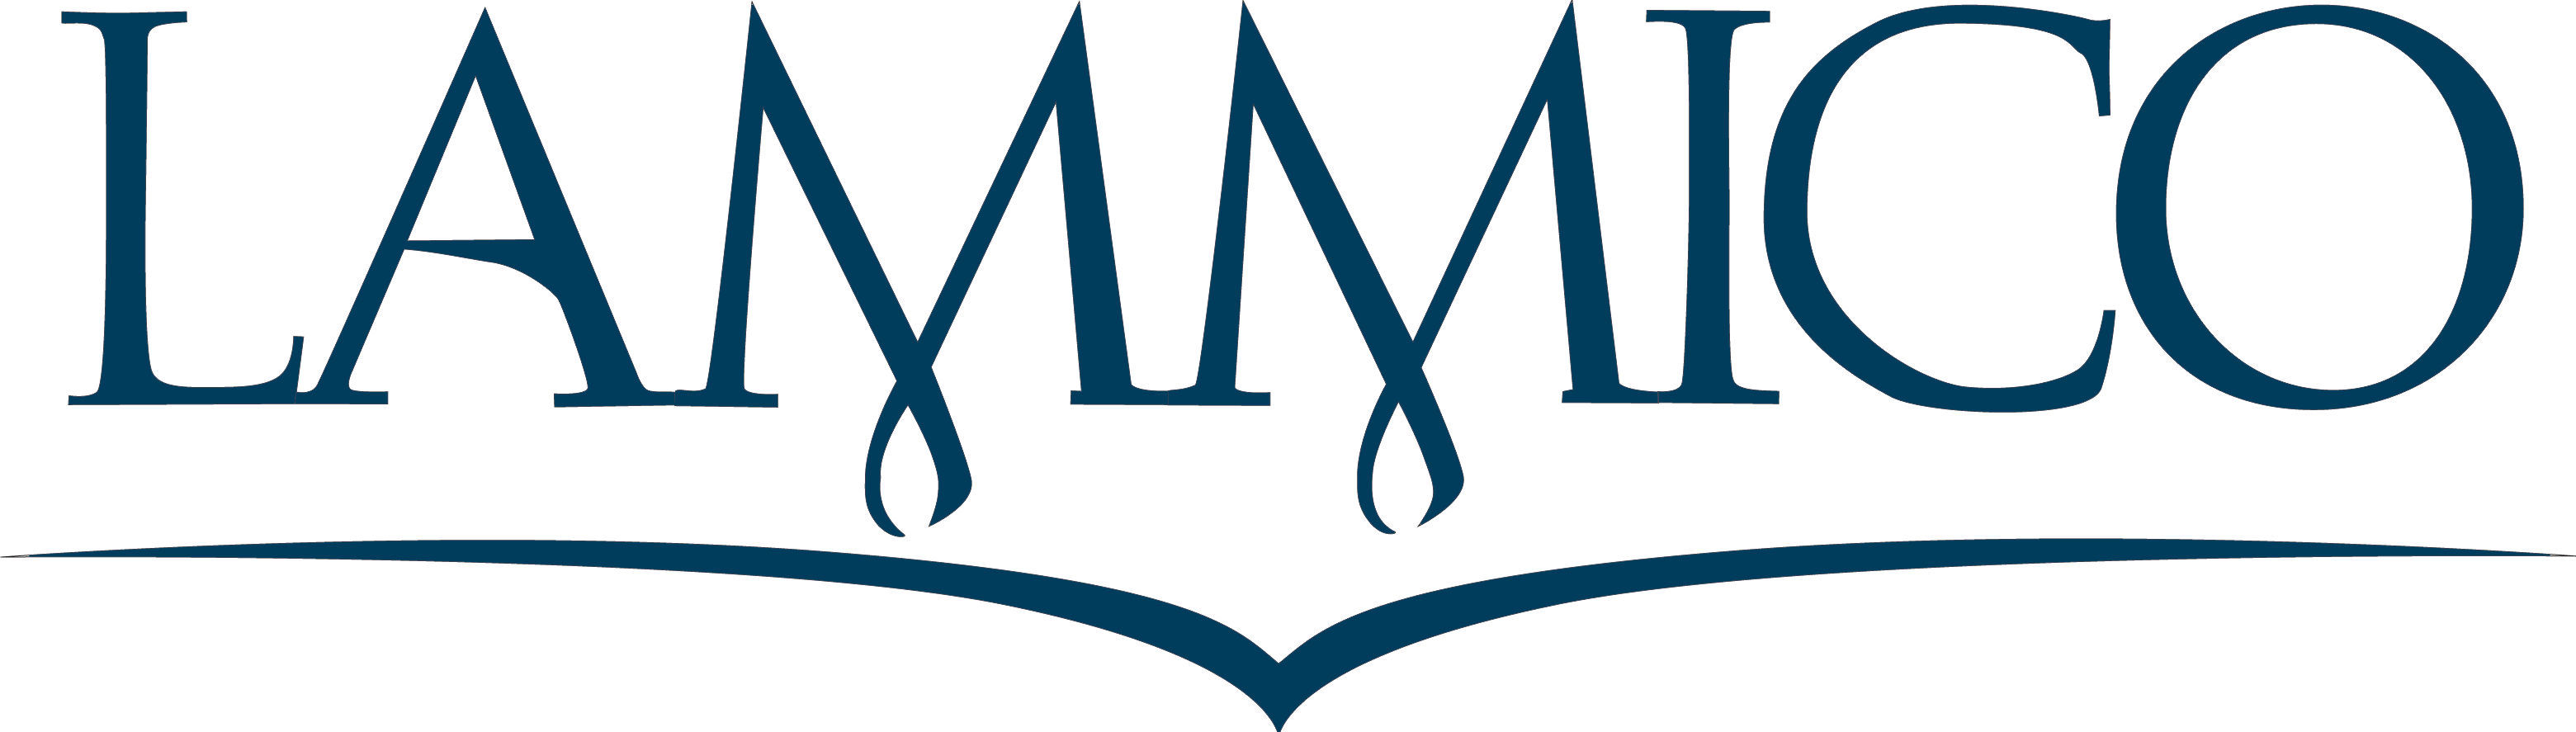 LAMMICO Company Logo